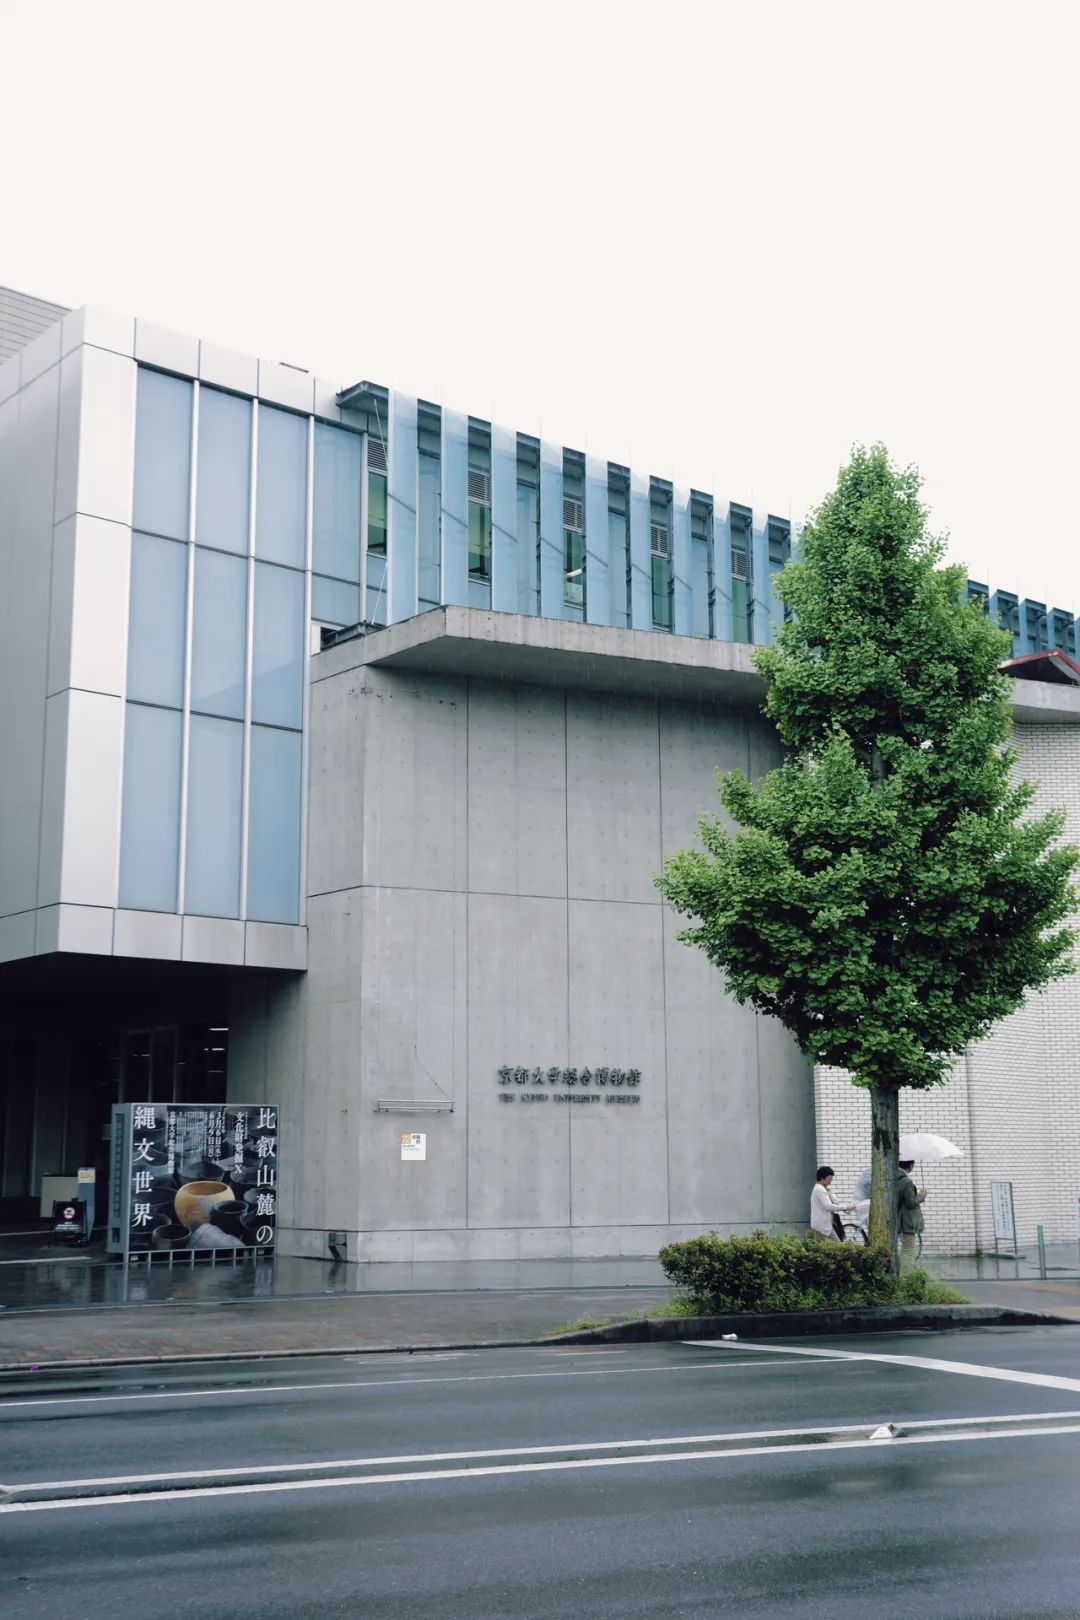 出町柳附近,就是著名的京都大学既然到了这里,于是便去校园里走走